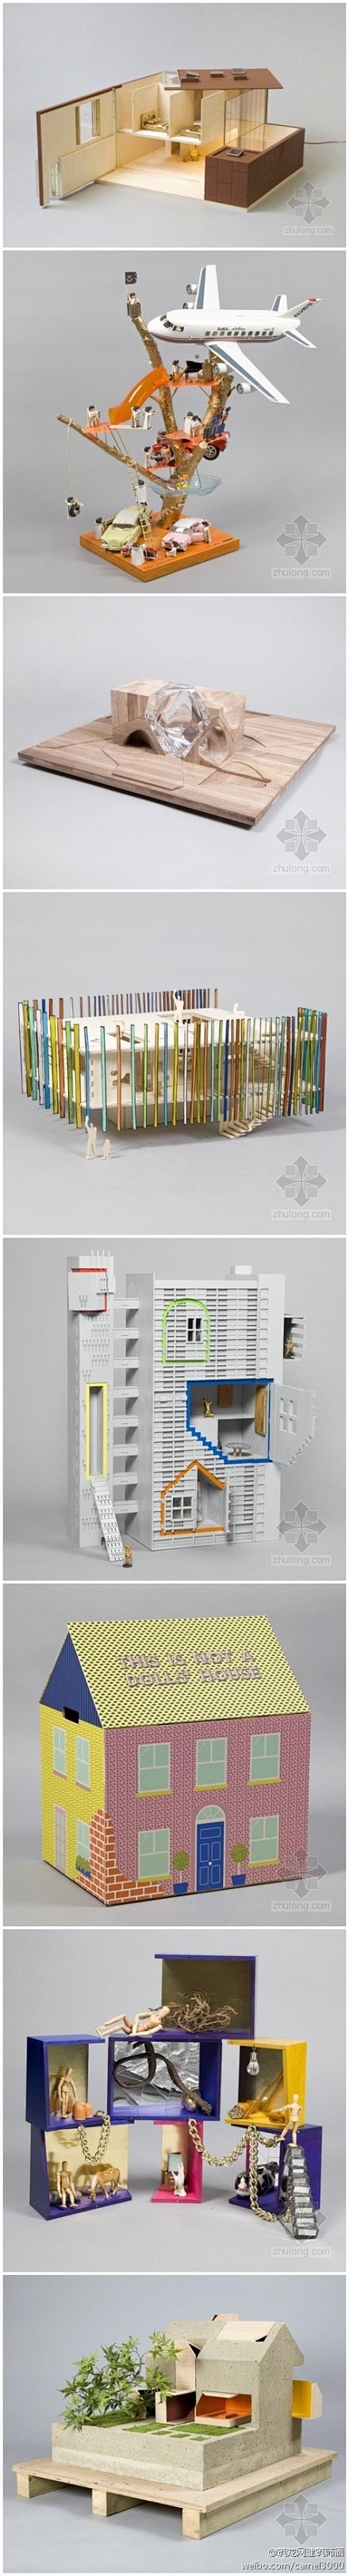 扎哈·哈迪德引领众建筑师设计伦敦玩具屋。...